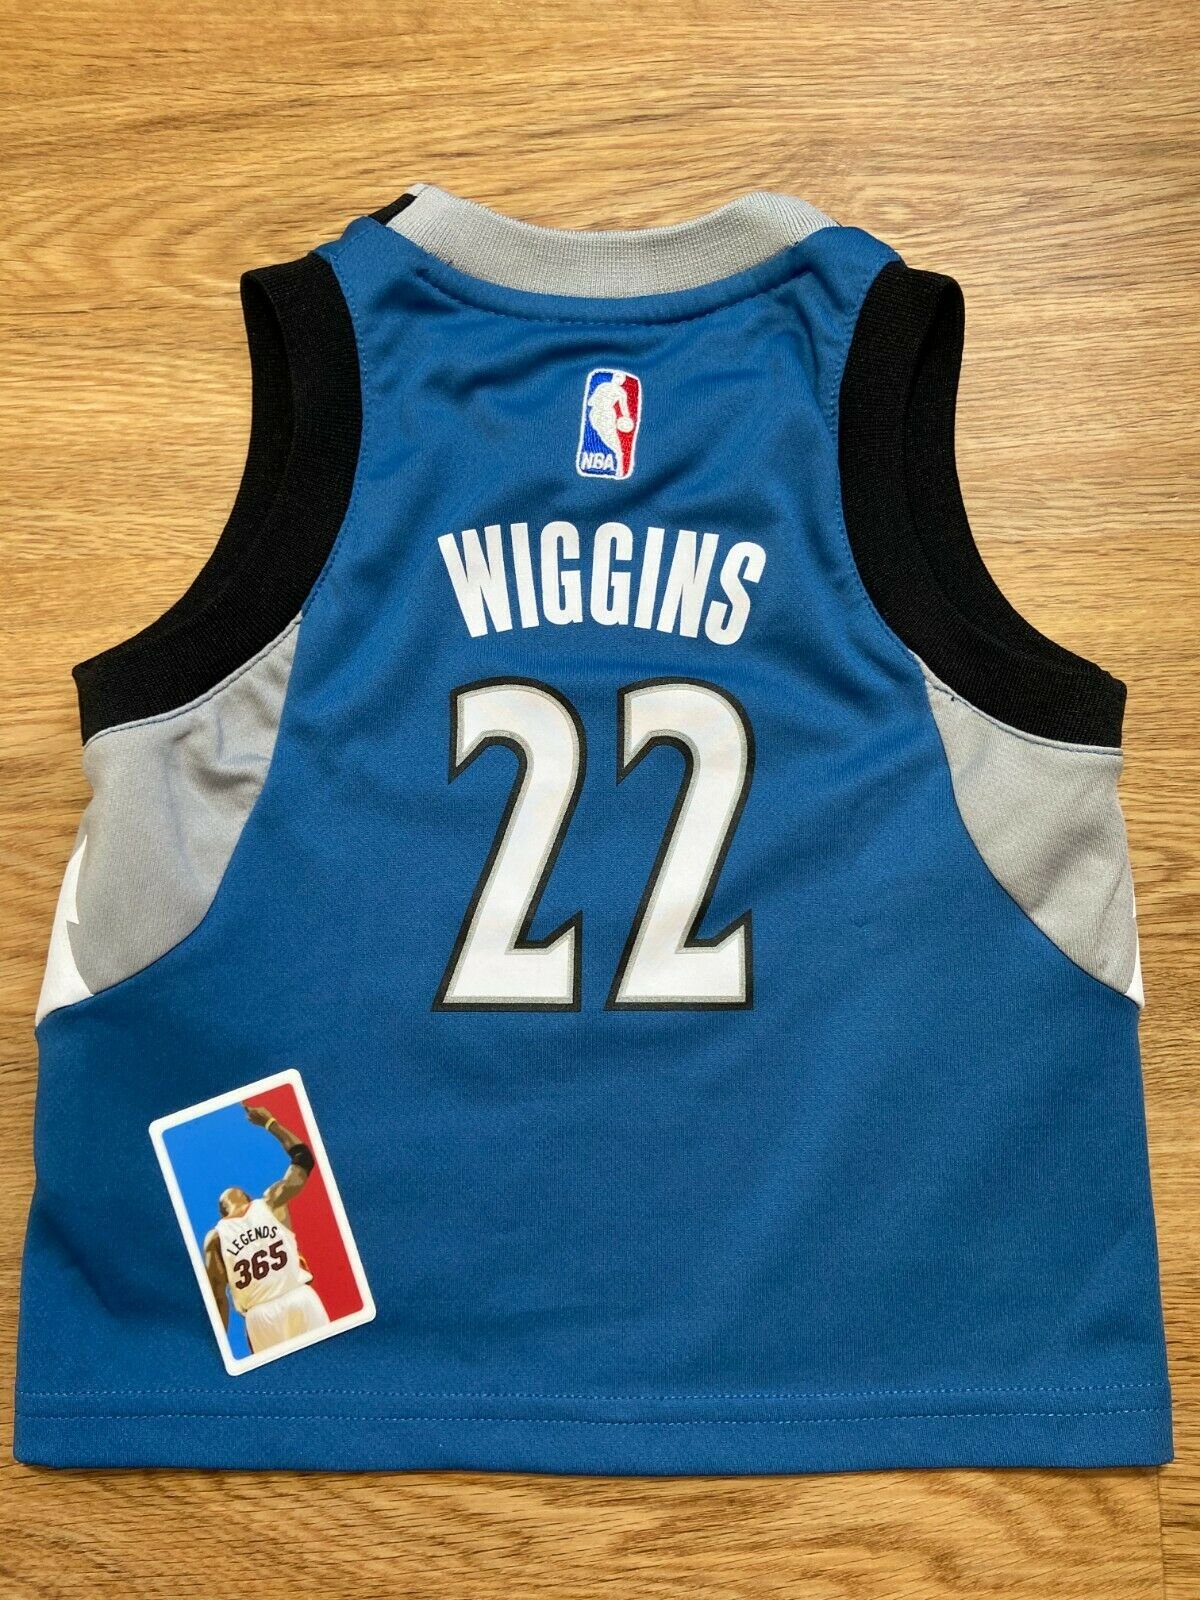 wiggins swingman jersey